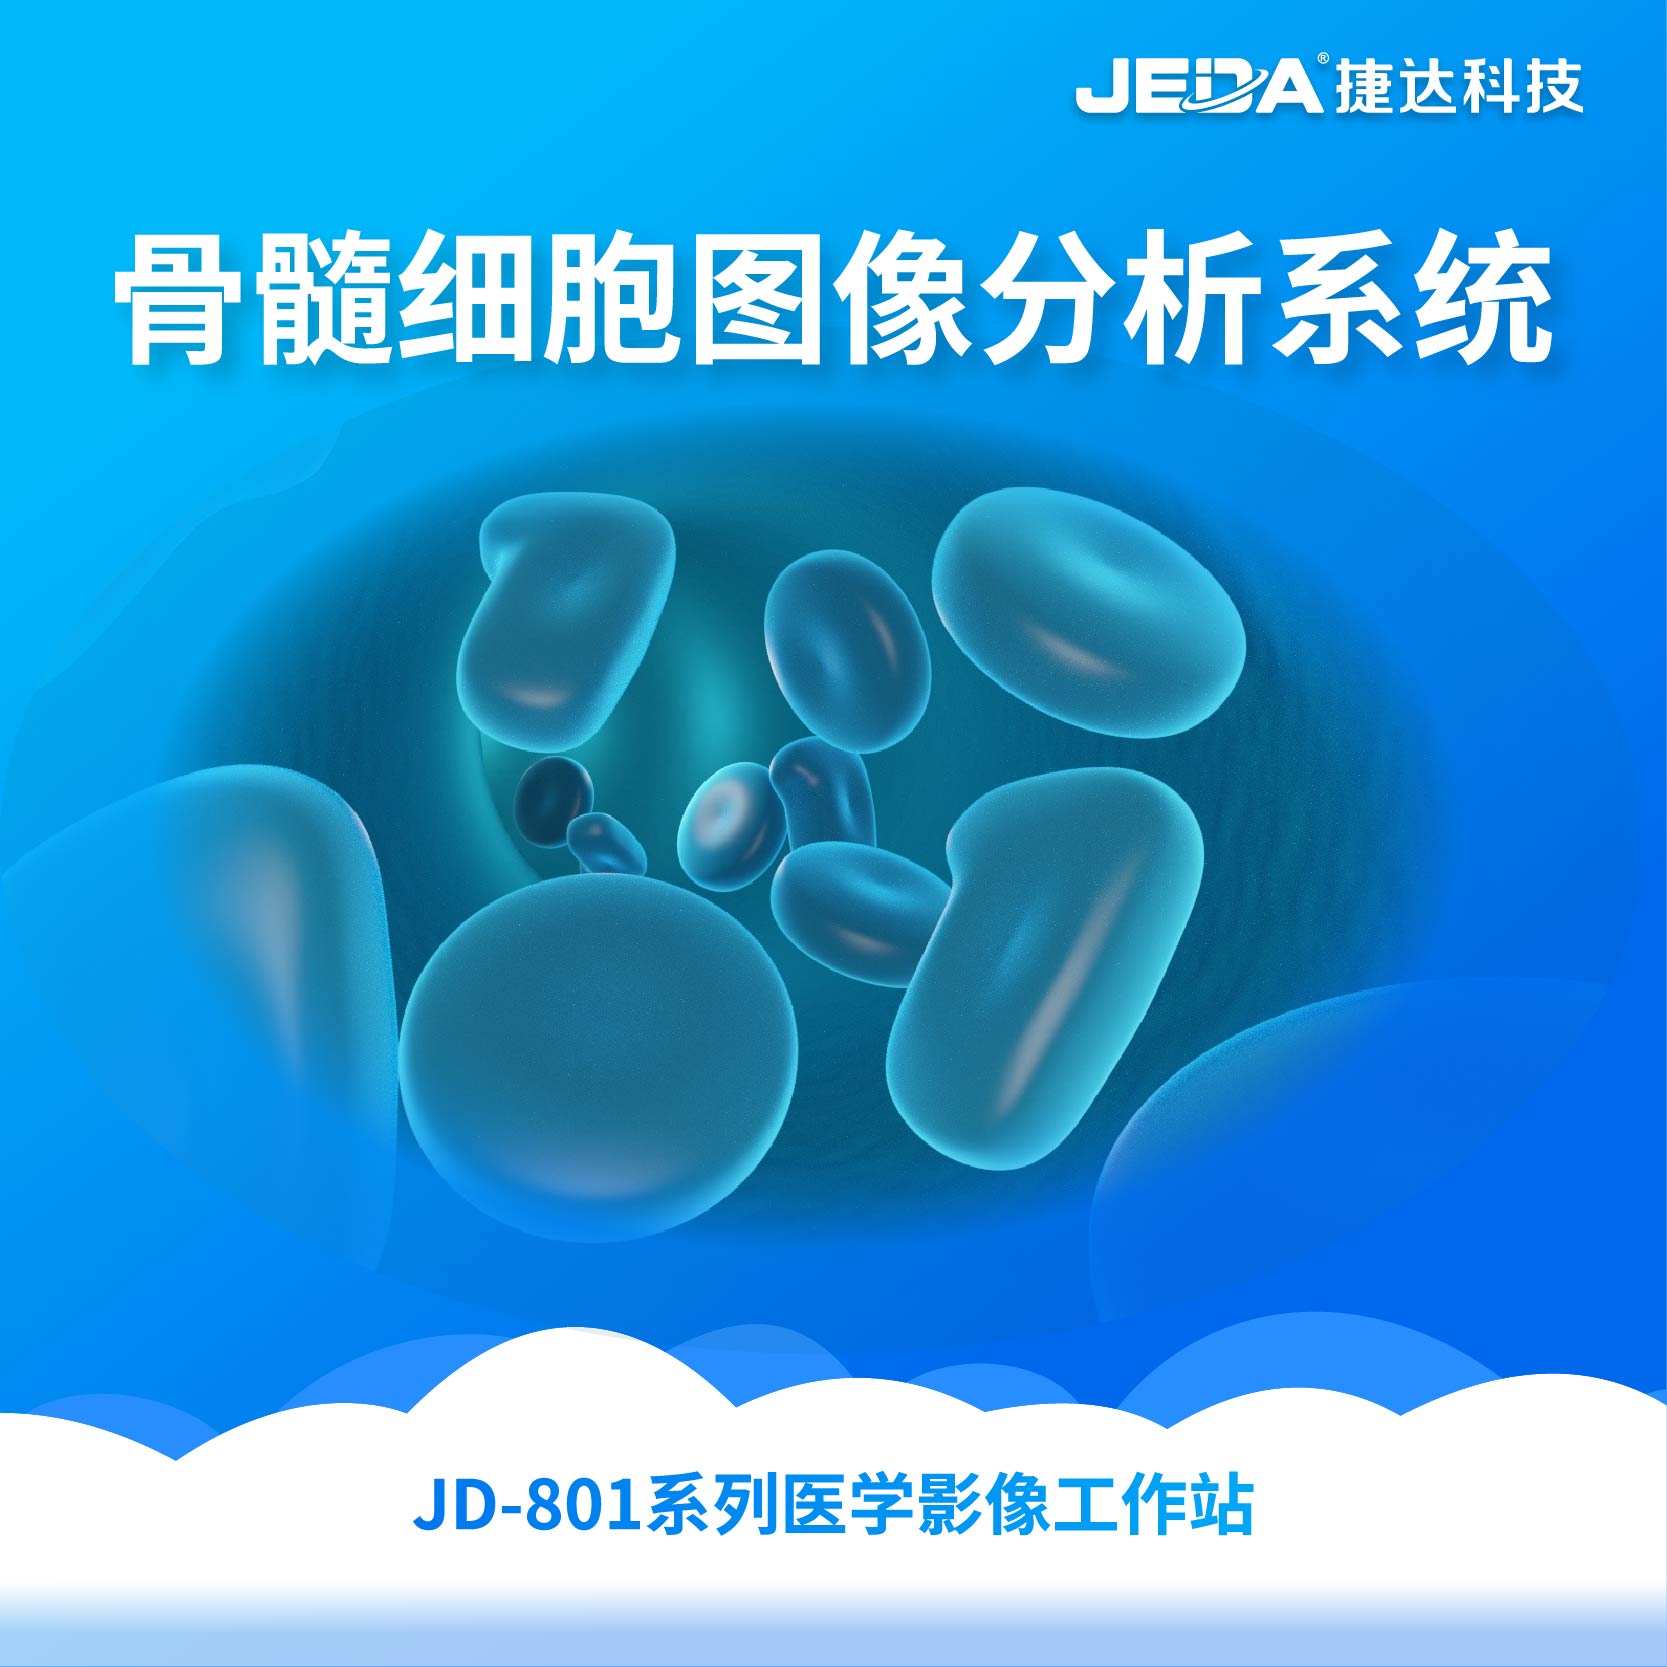 JD-801系列医学影像工作站-骨髓细胞图像分析系统-云医购